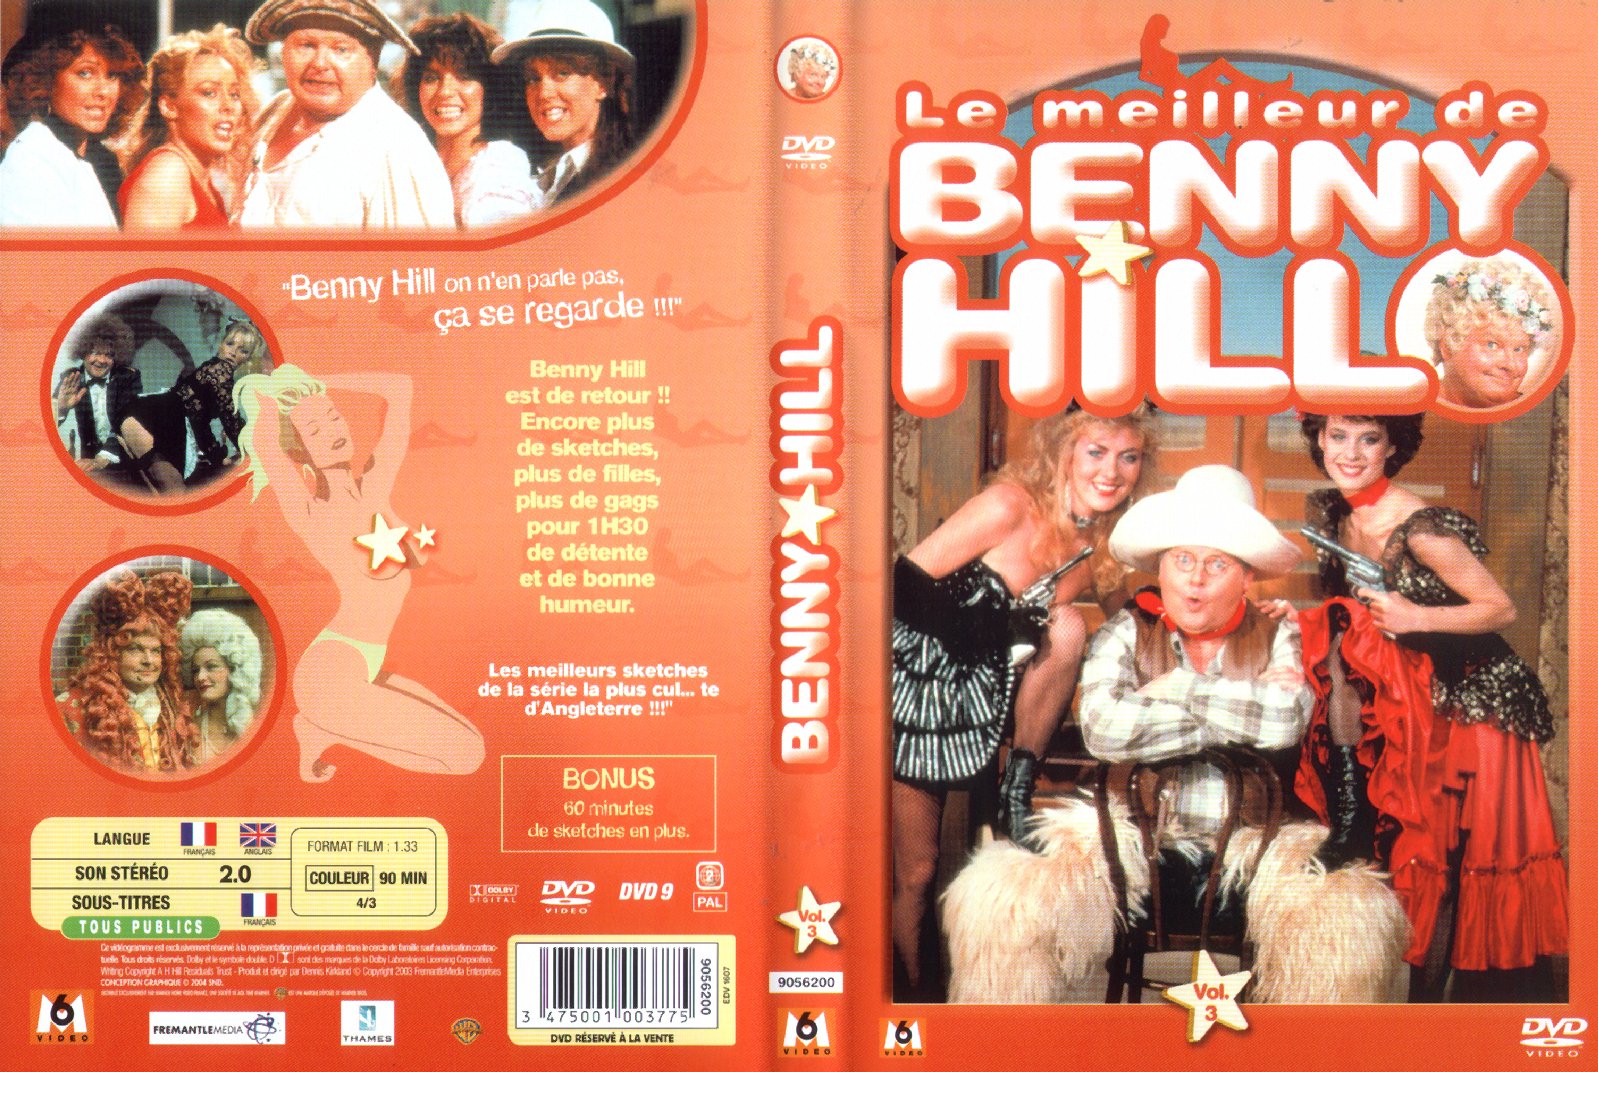 Jaquette DVD Benny Hill - Le meilleur de Benny Hill vol 3